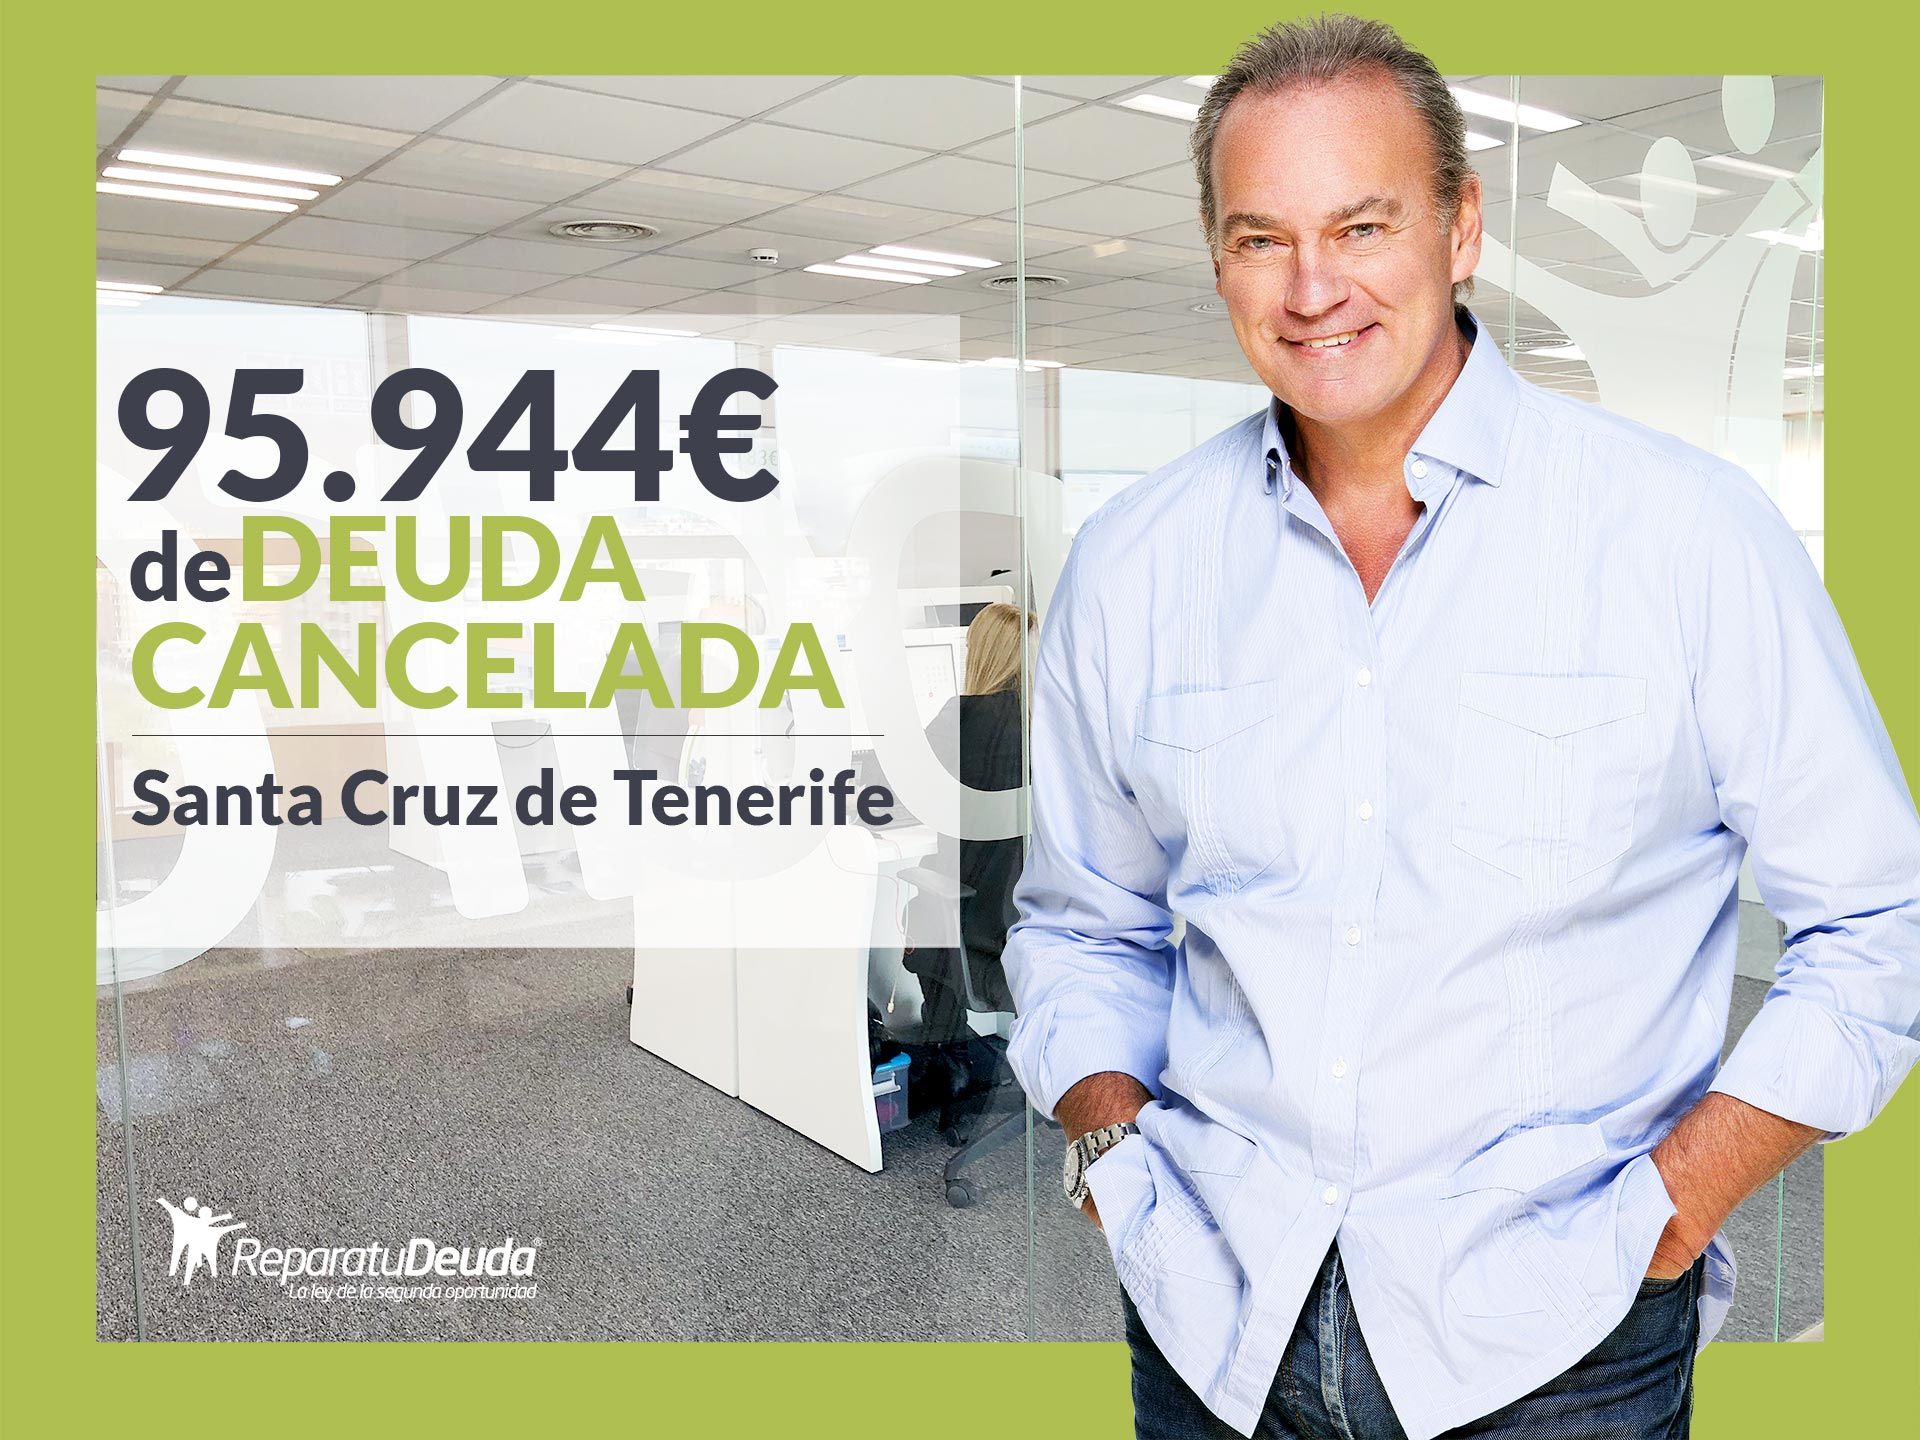 Repara tu Deuda Abogados cancela 95.944? en Tenerife (Canarias) con la Ley de Segunda Oportunidad